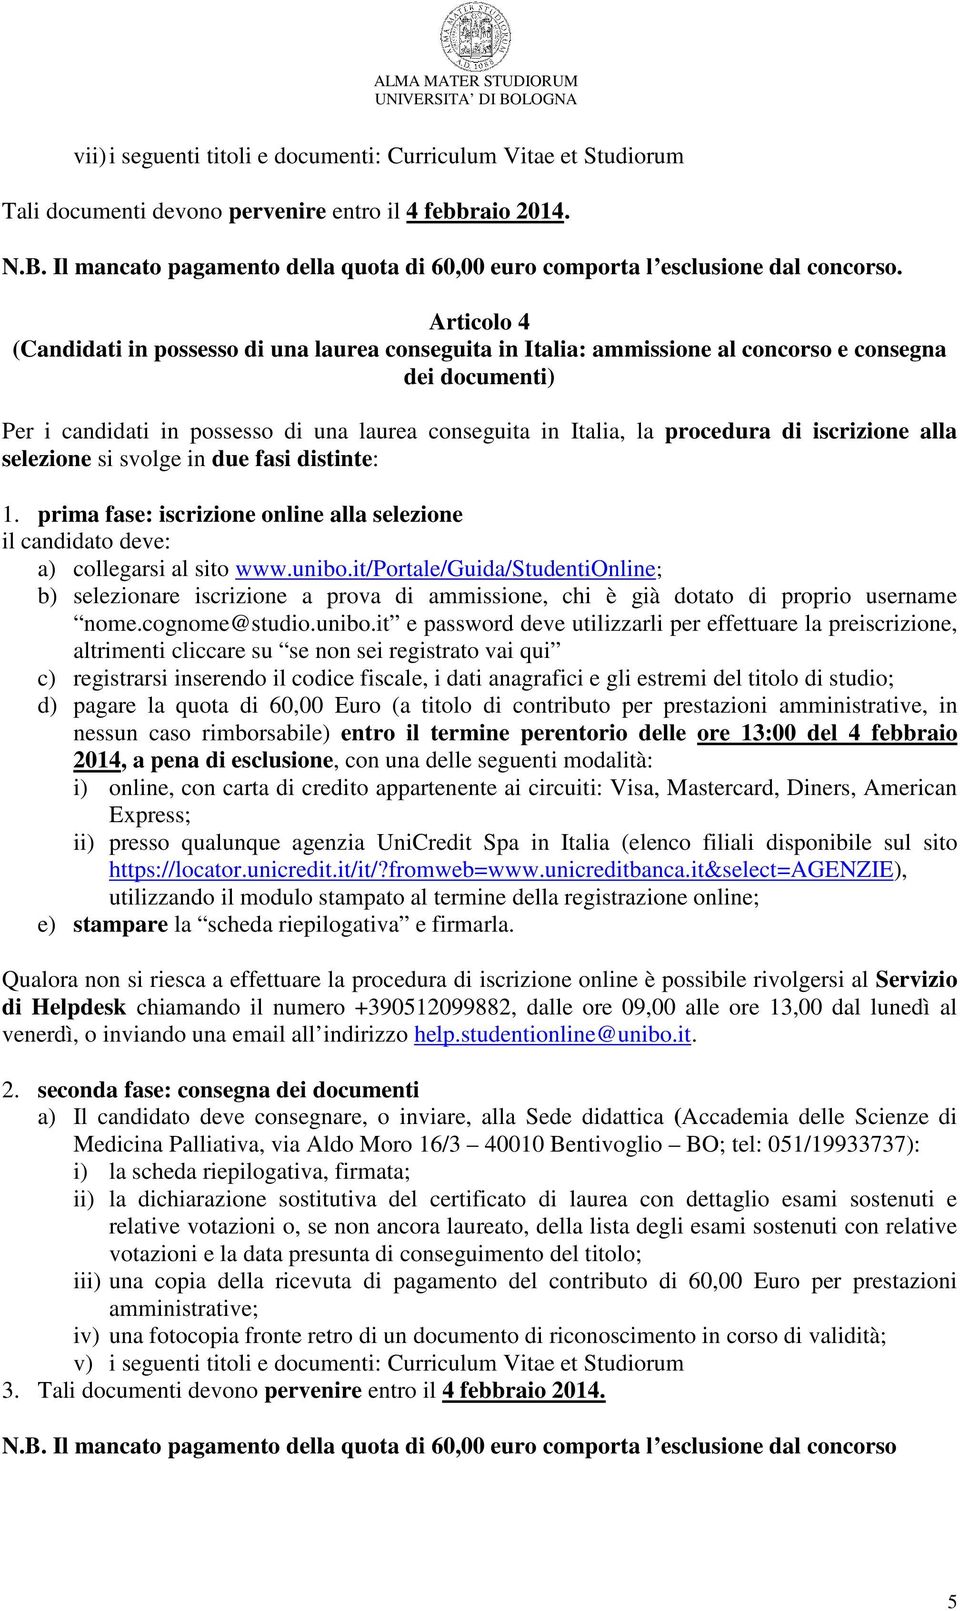 Articolo 4 (Candidati in possesso di una laurea conseguita in Italia: ammissione al concorso e consegna dei documenti) Per i candidati in possesso di una laurea conseguita in Italia, la procedura di